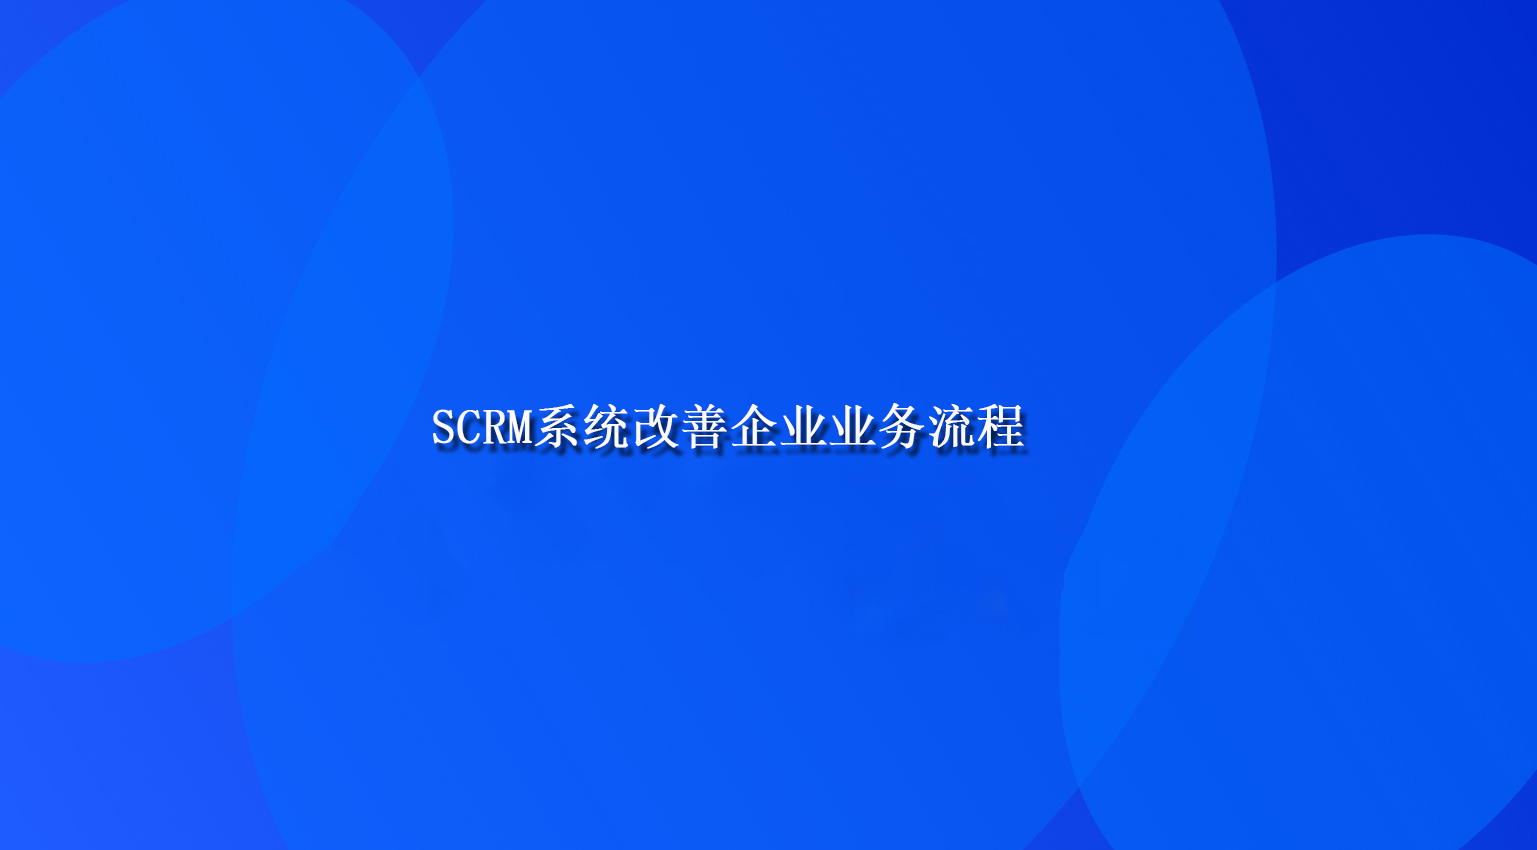 SCRM系统改善企业业务流程